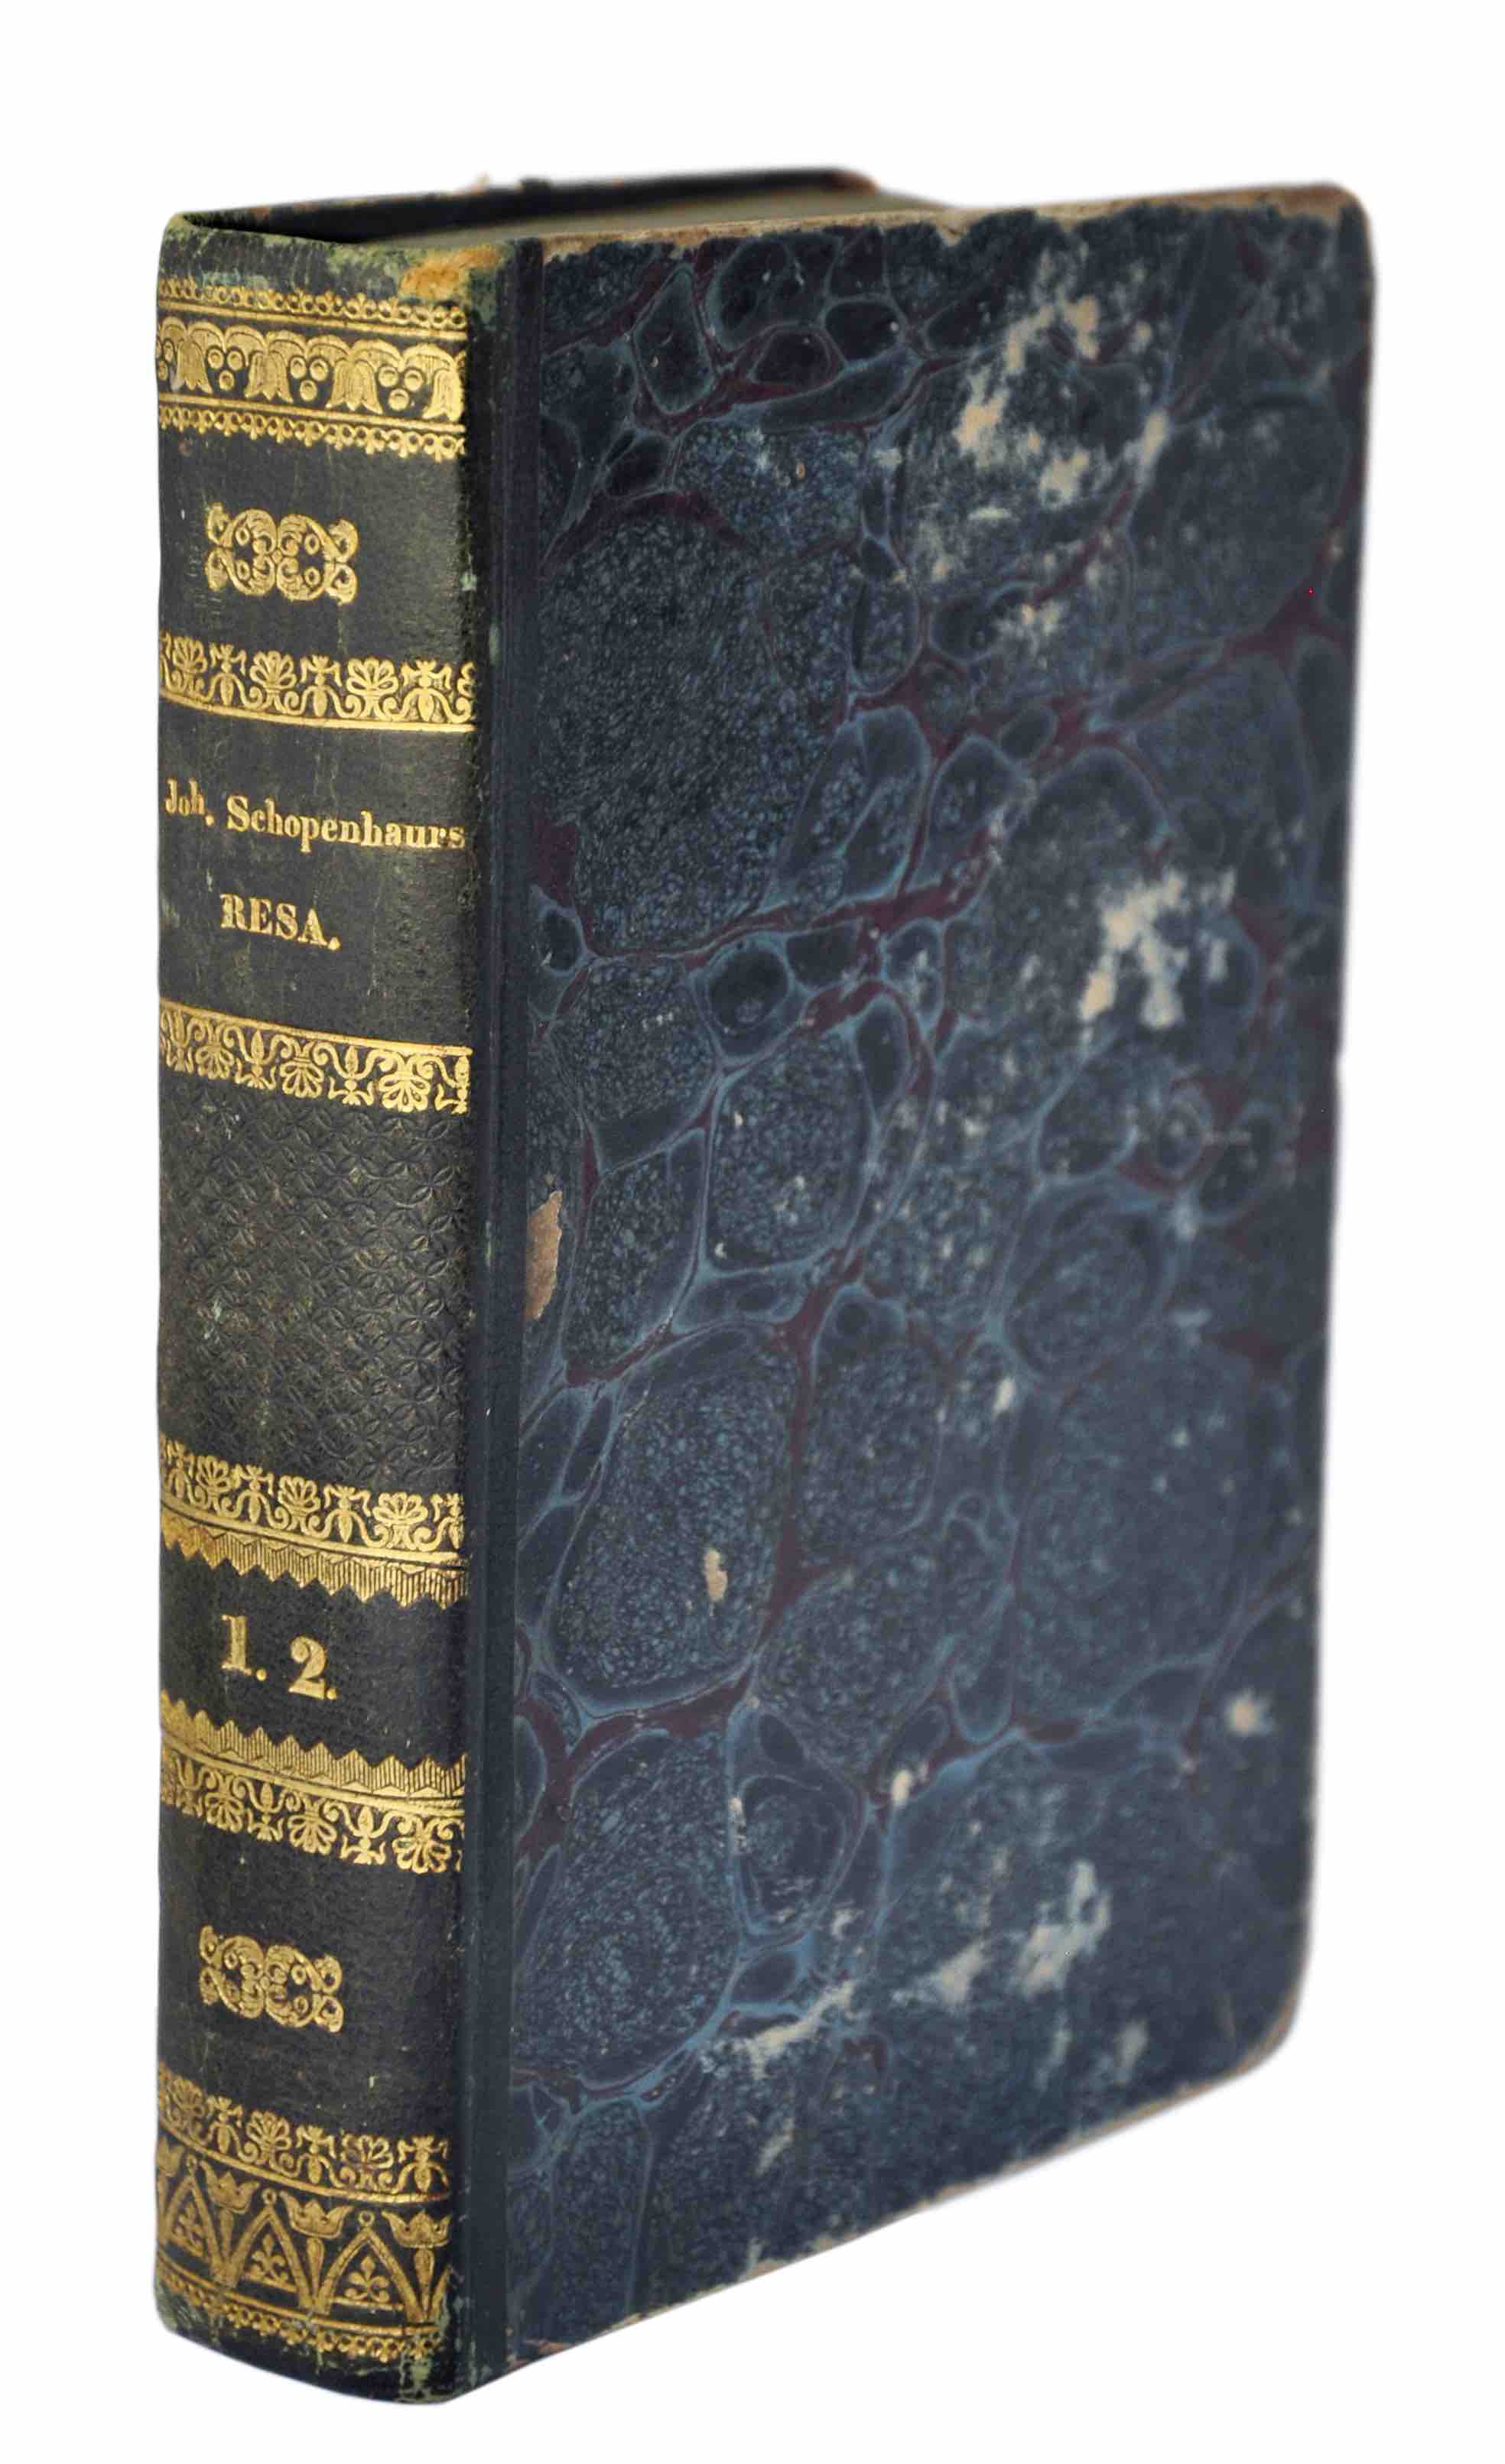 SCHOPENHAUER, JOHANNA HENRIETTE: - Resa ifrn Paris genom Sdra Frankrike till Chamouny. Two parts in one volume. Mariefred, Collin & Comp., 1826-27.